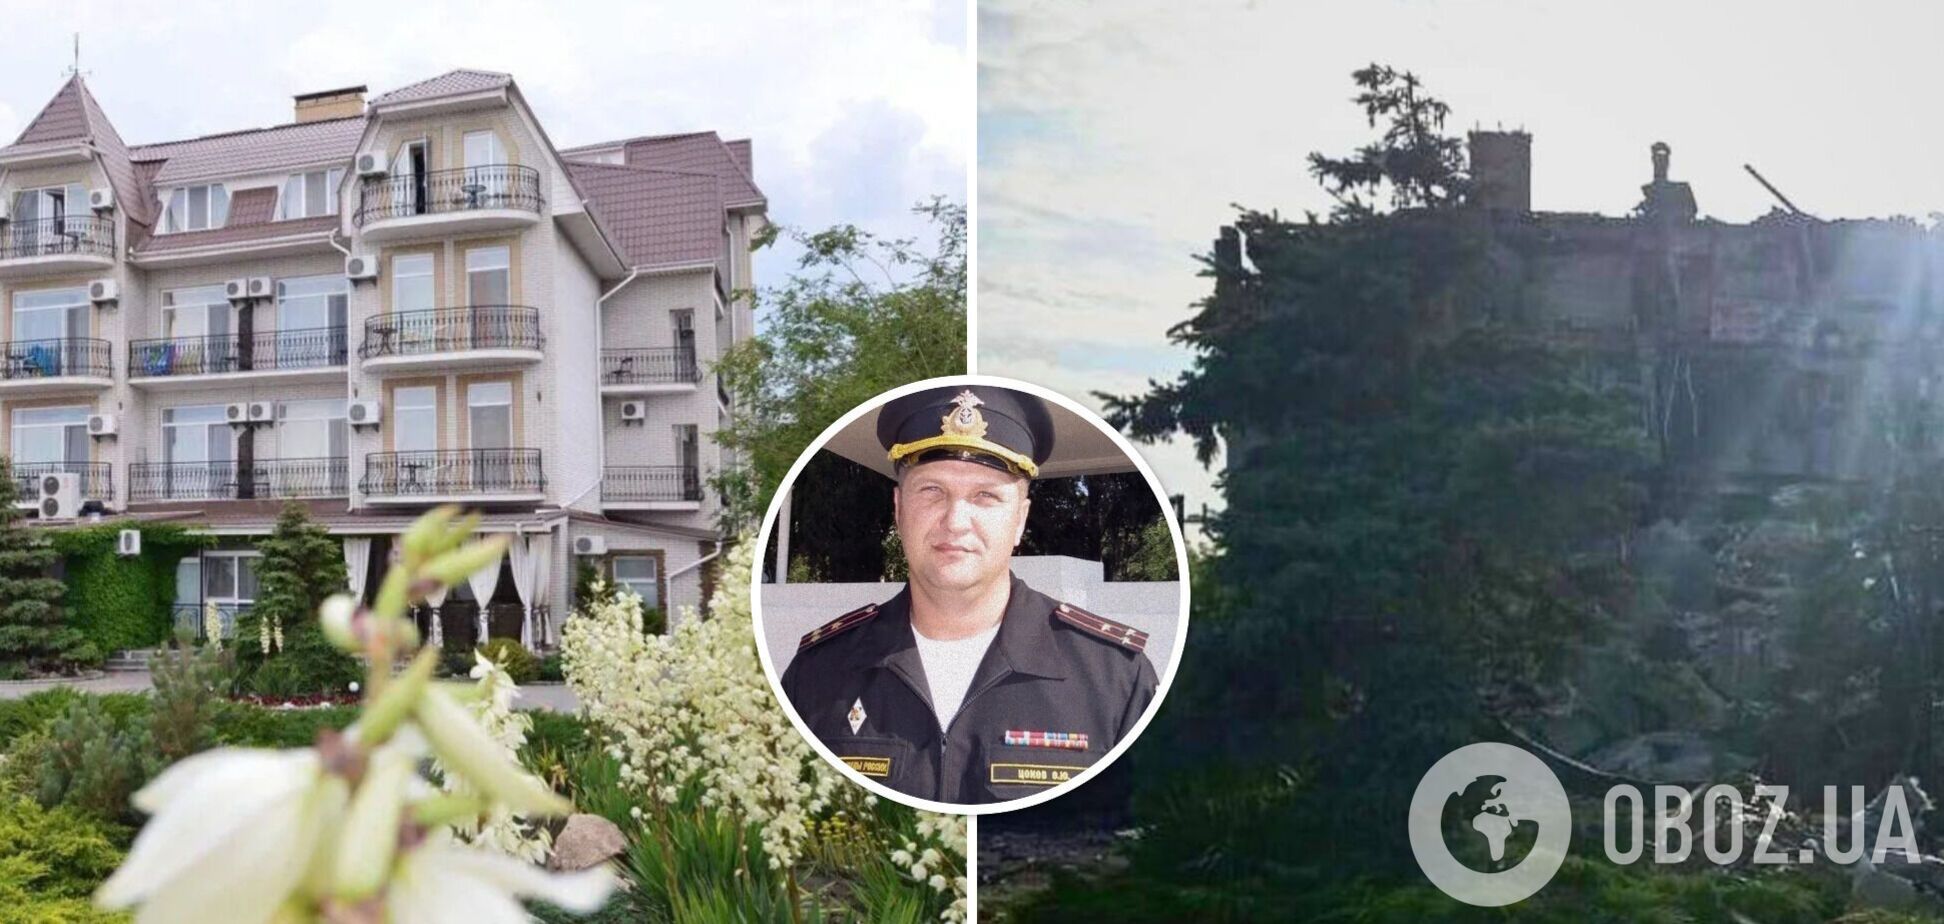 'Апокаліпсис був непоганий': з’явилися фото готелю 'Дюна' в Бердянську, де ліквідували російського генерала Цокова